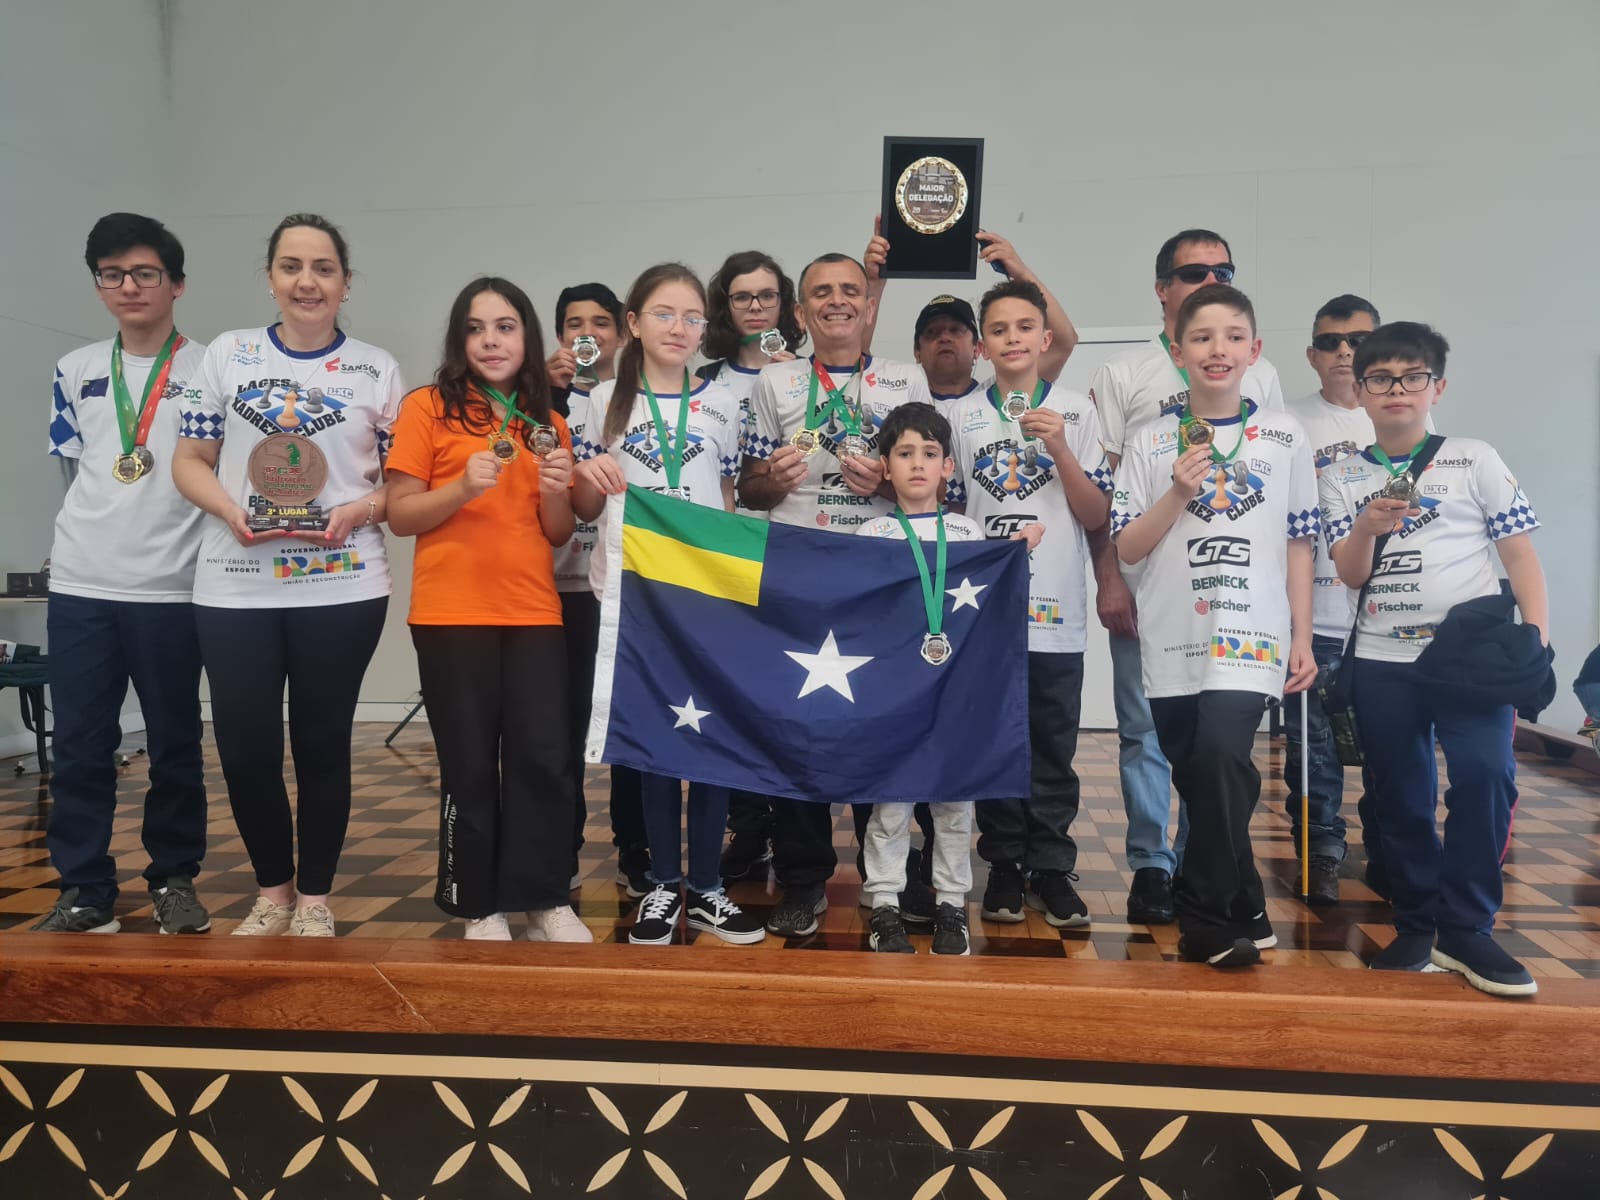 Lageano conquista campeonato brasileiro escolar de xadrez em Belo Horizonte  – Notícia no Ato